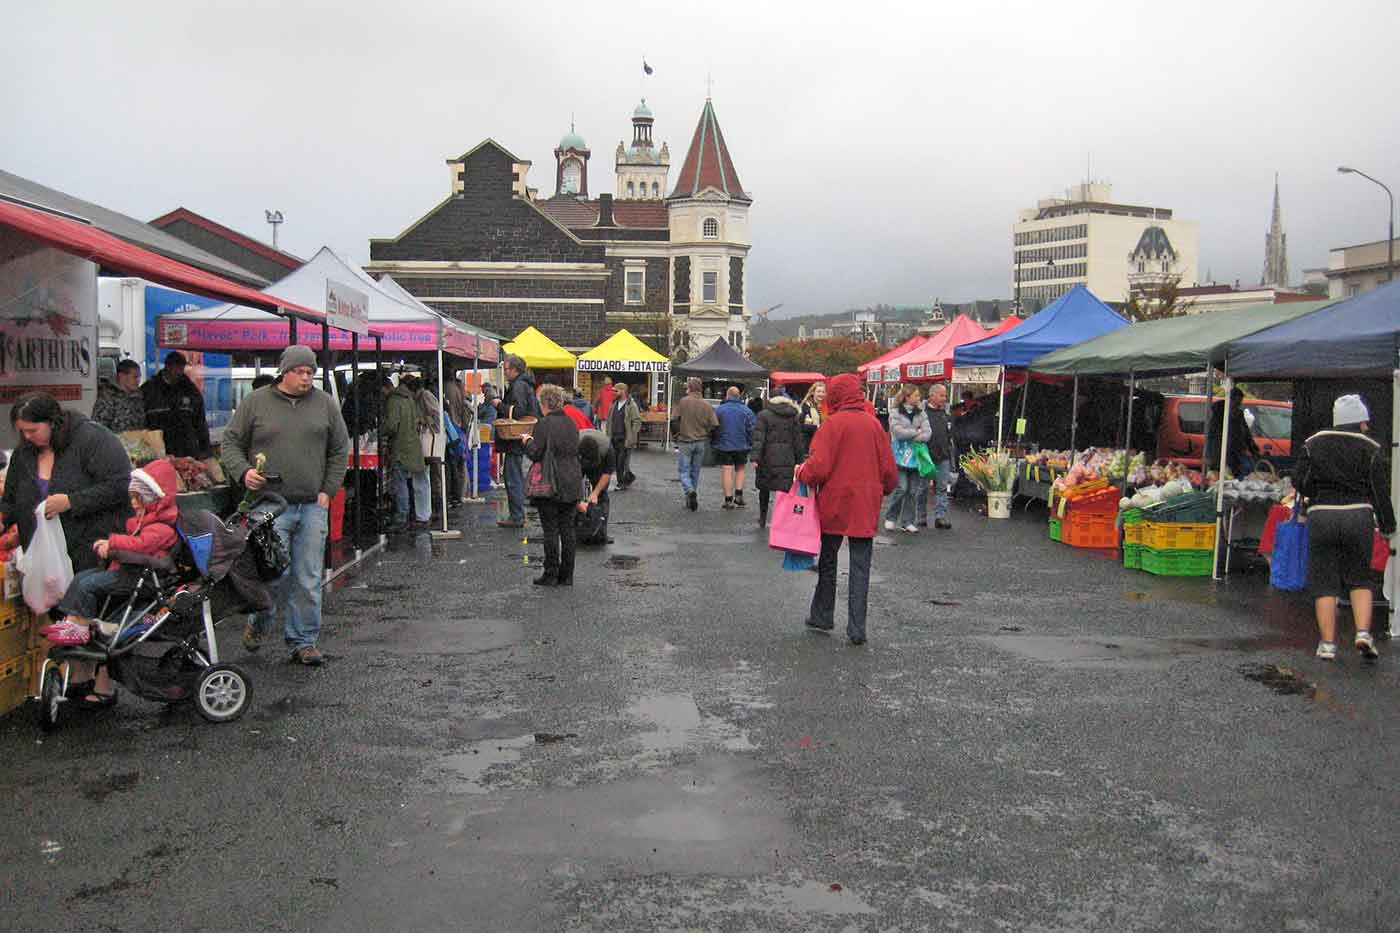 Otago Farmers Market